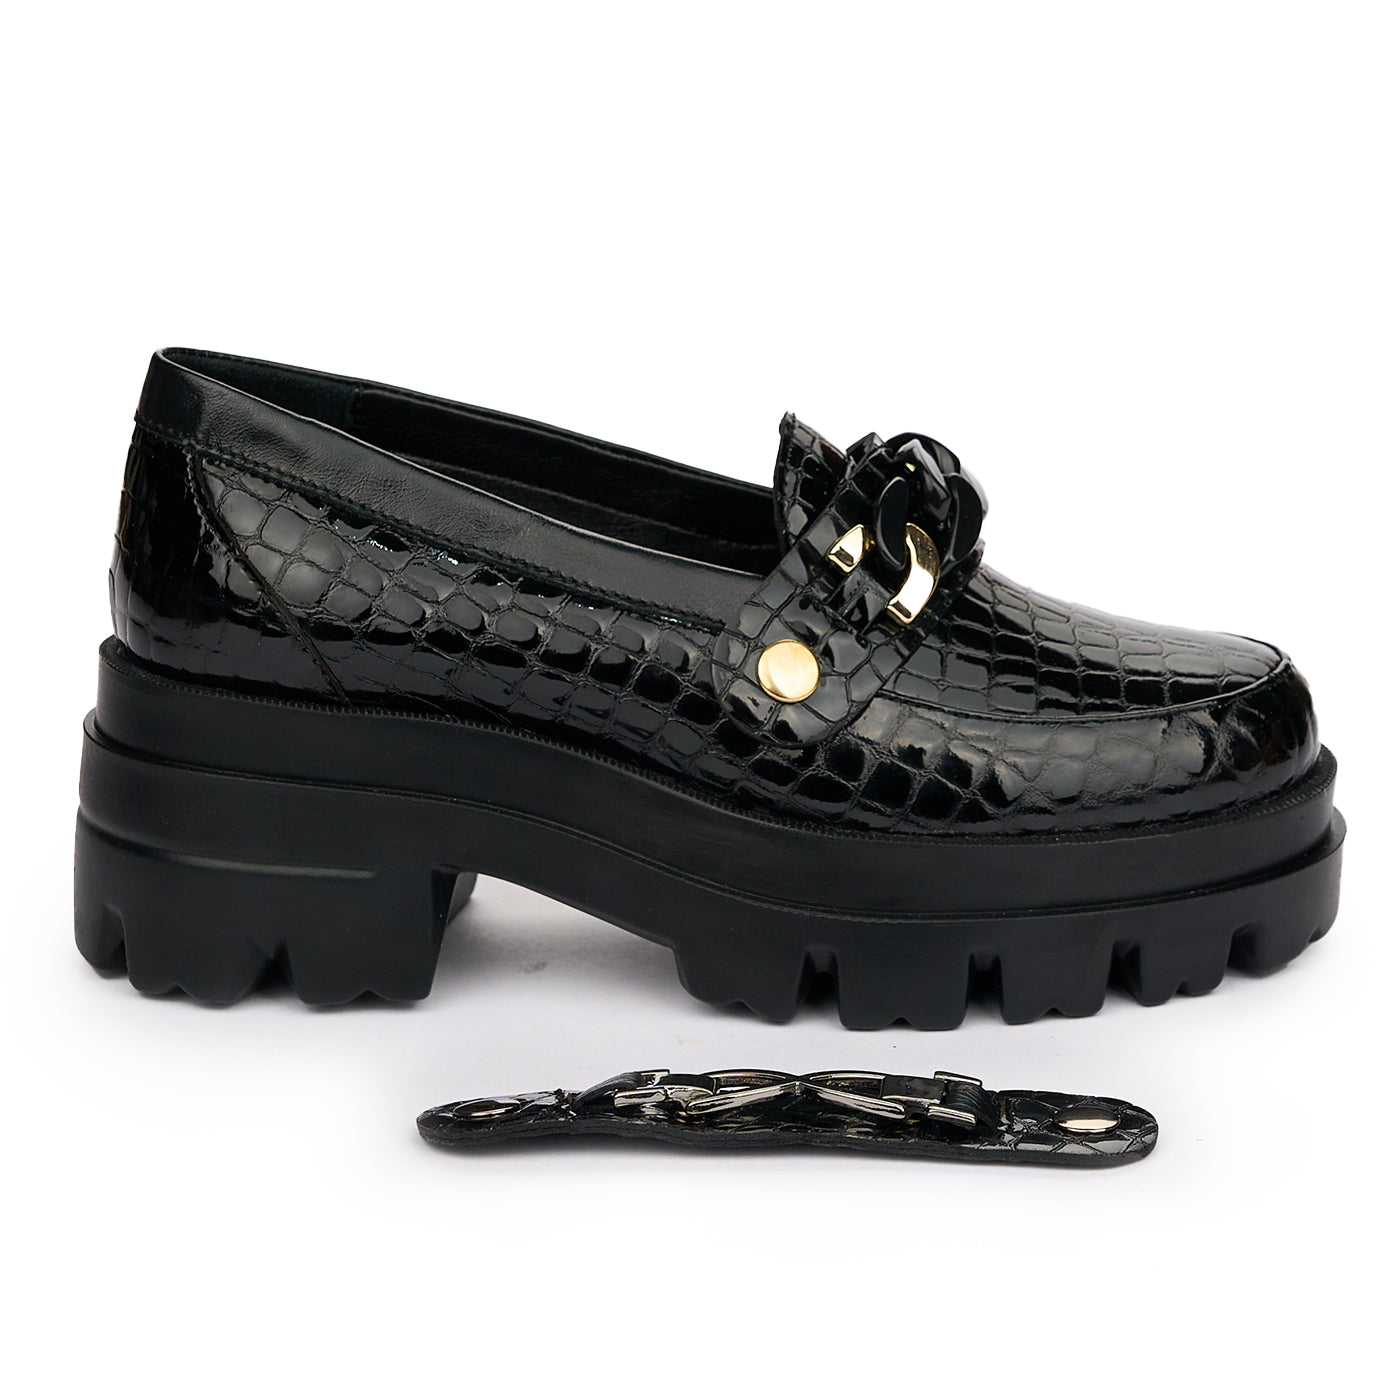 Pantofi dama cu doua accesorii din piele naturala neagra 12861